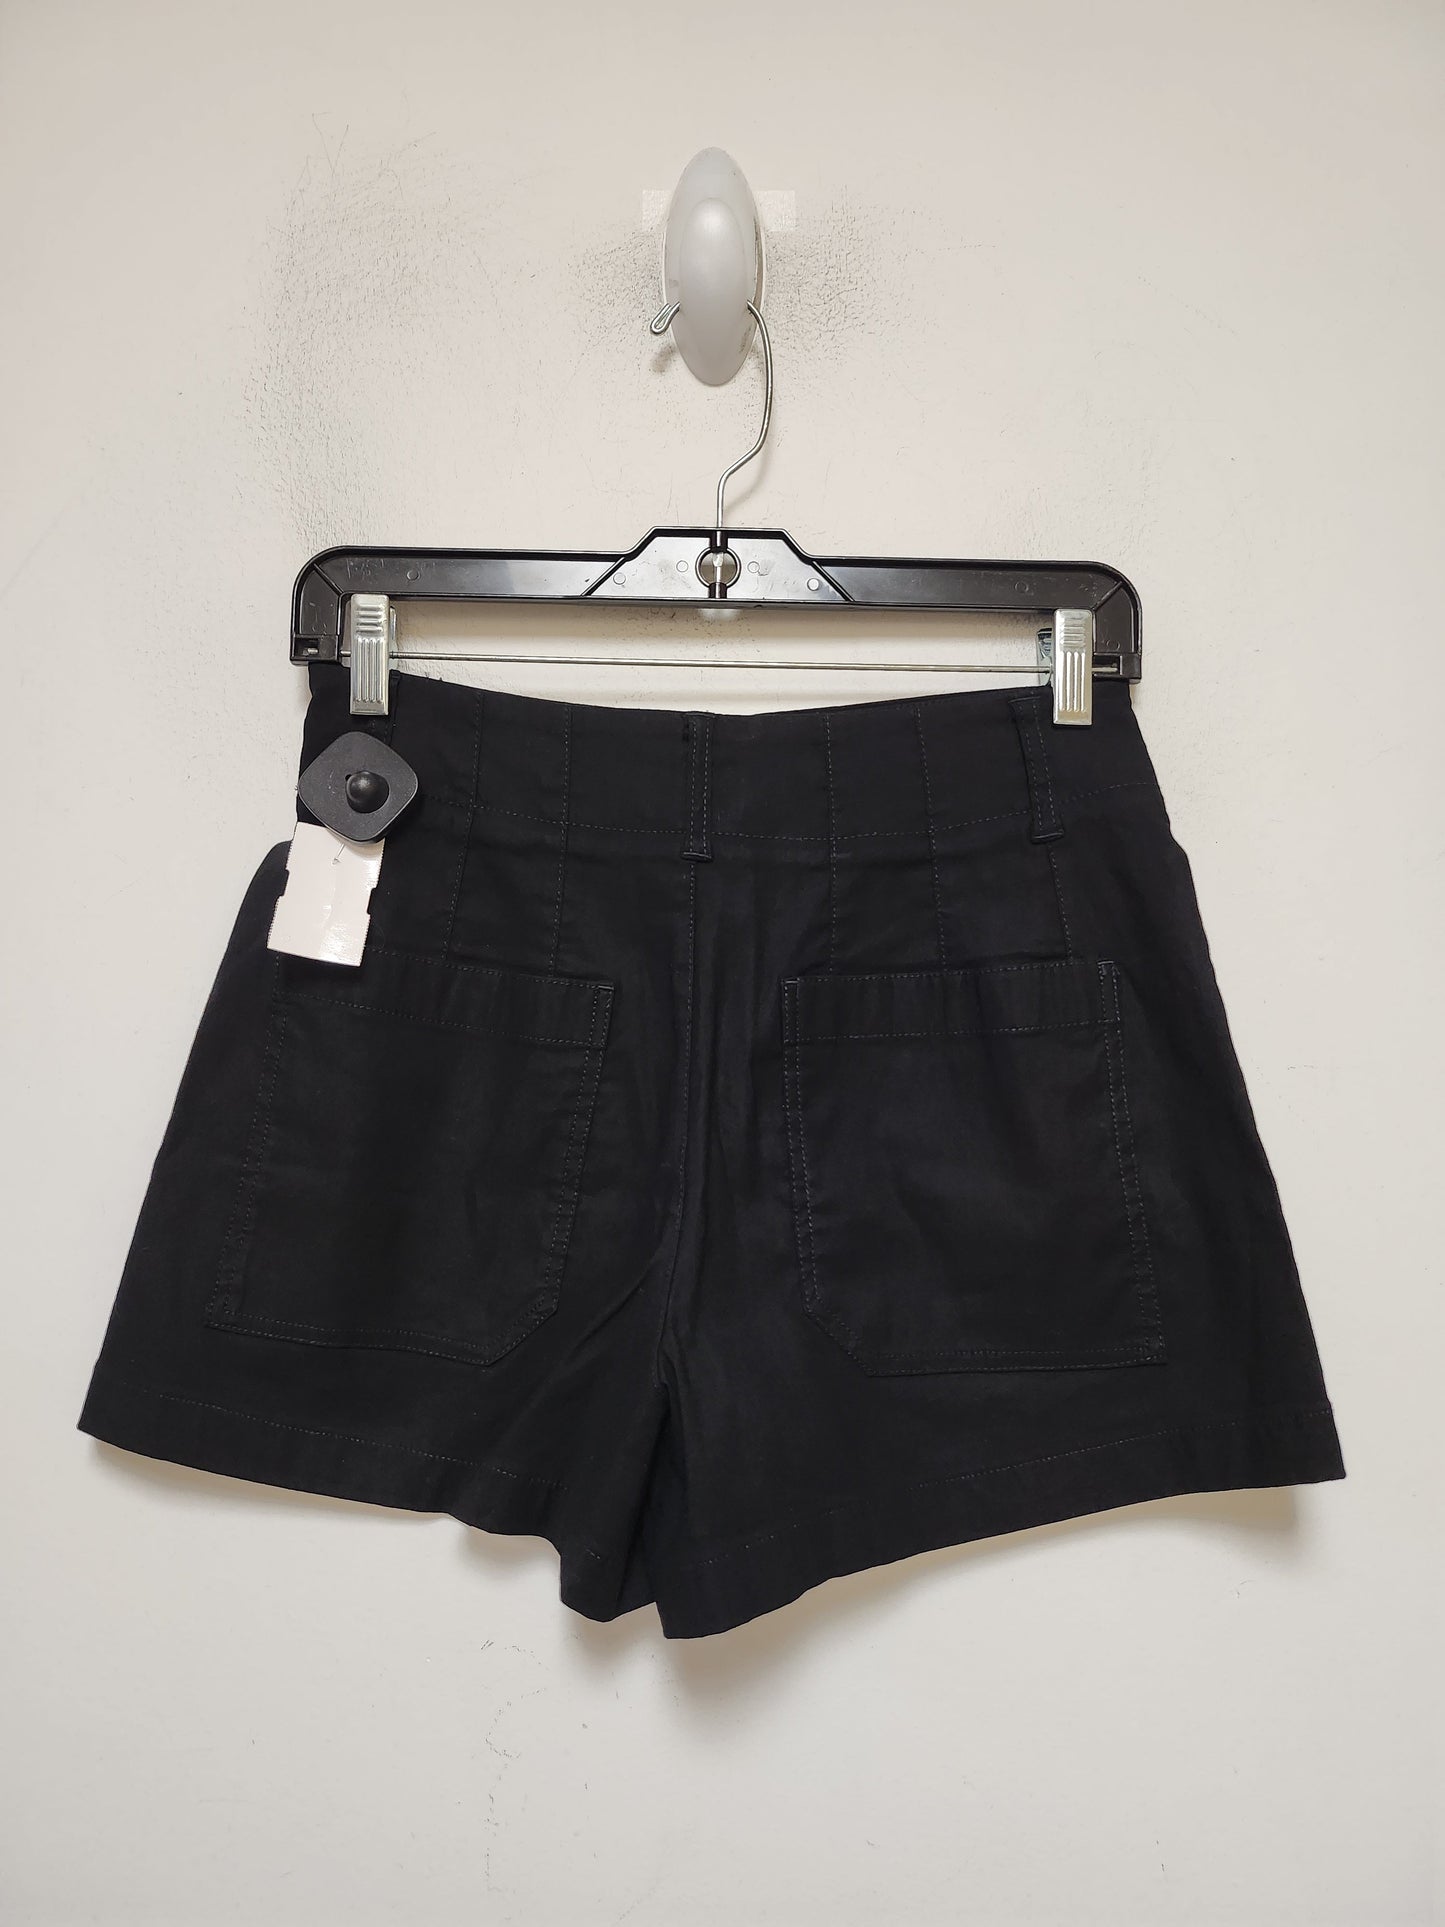 Black Shorts Maeve, Size 2